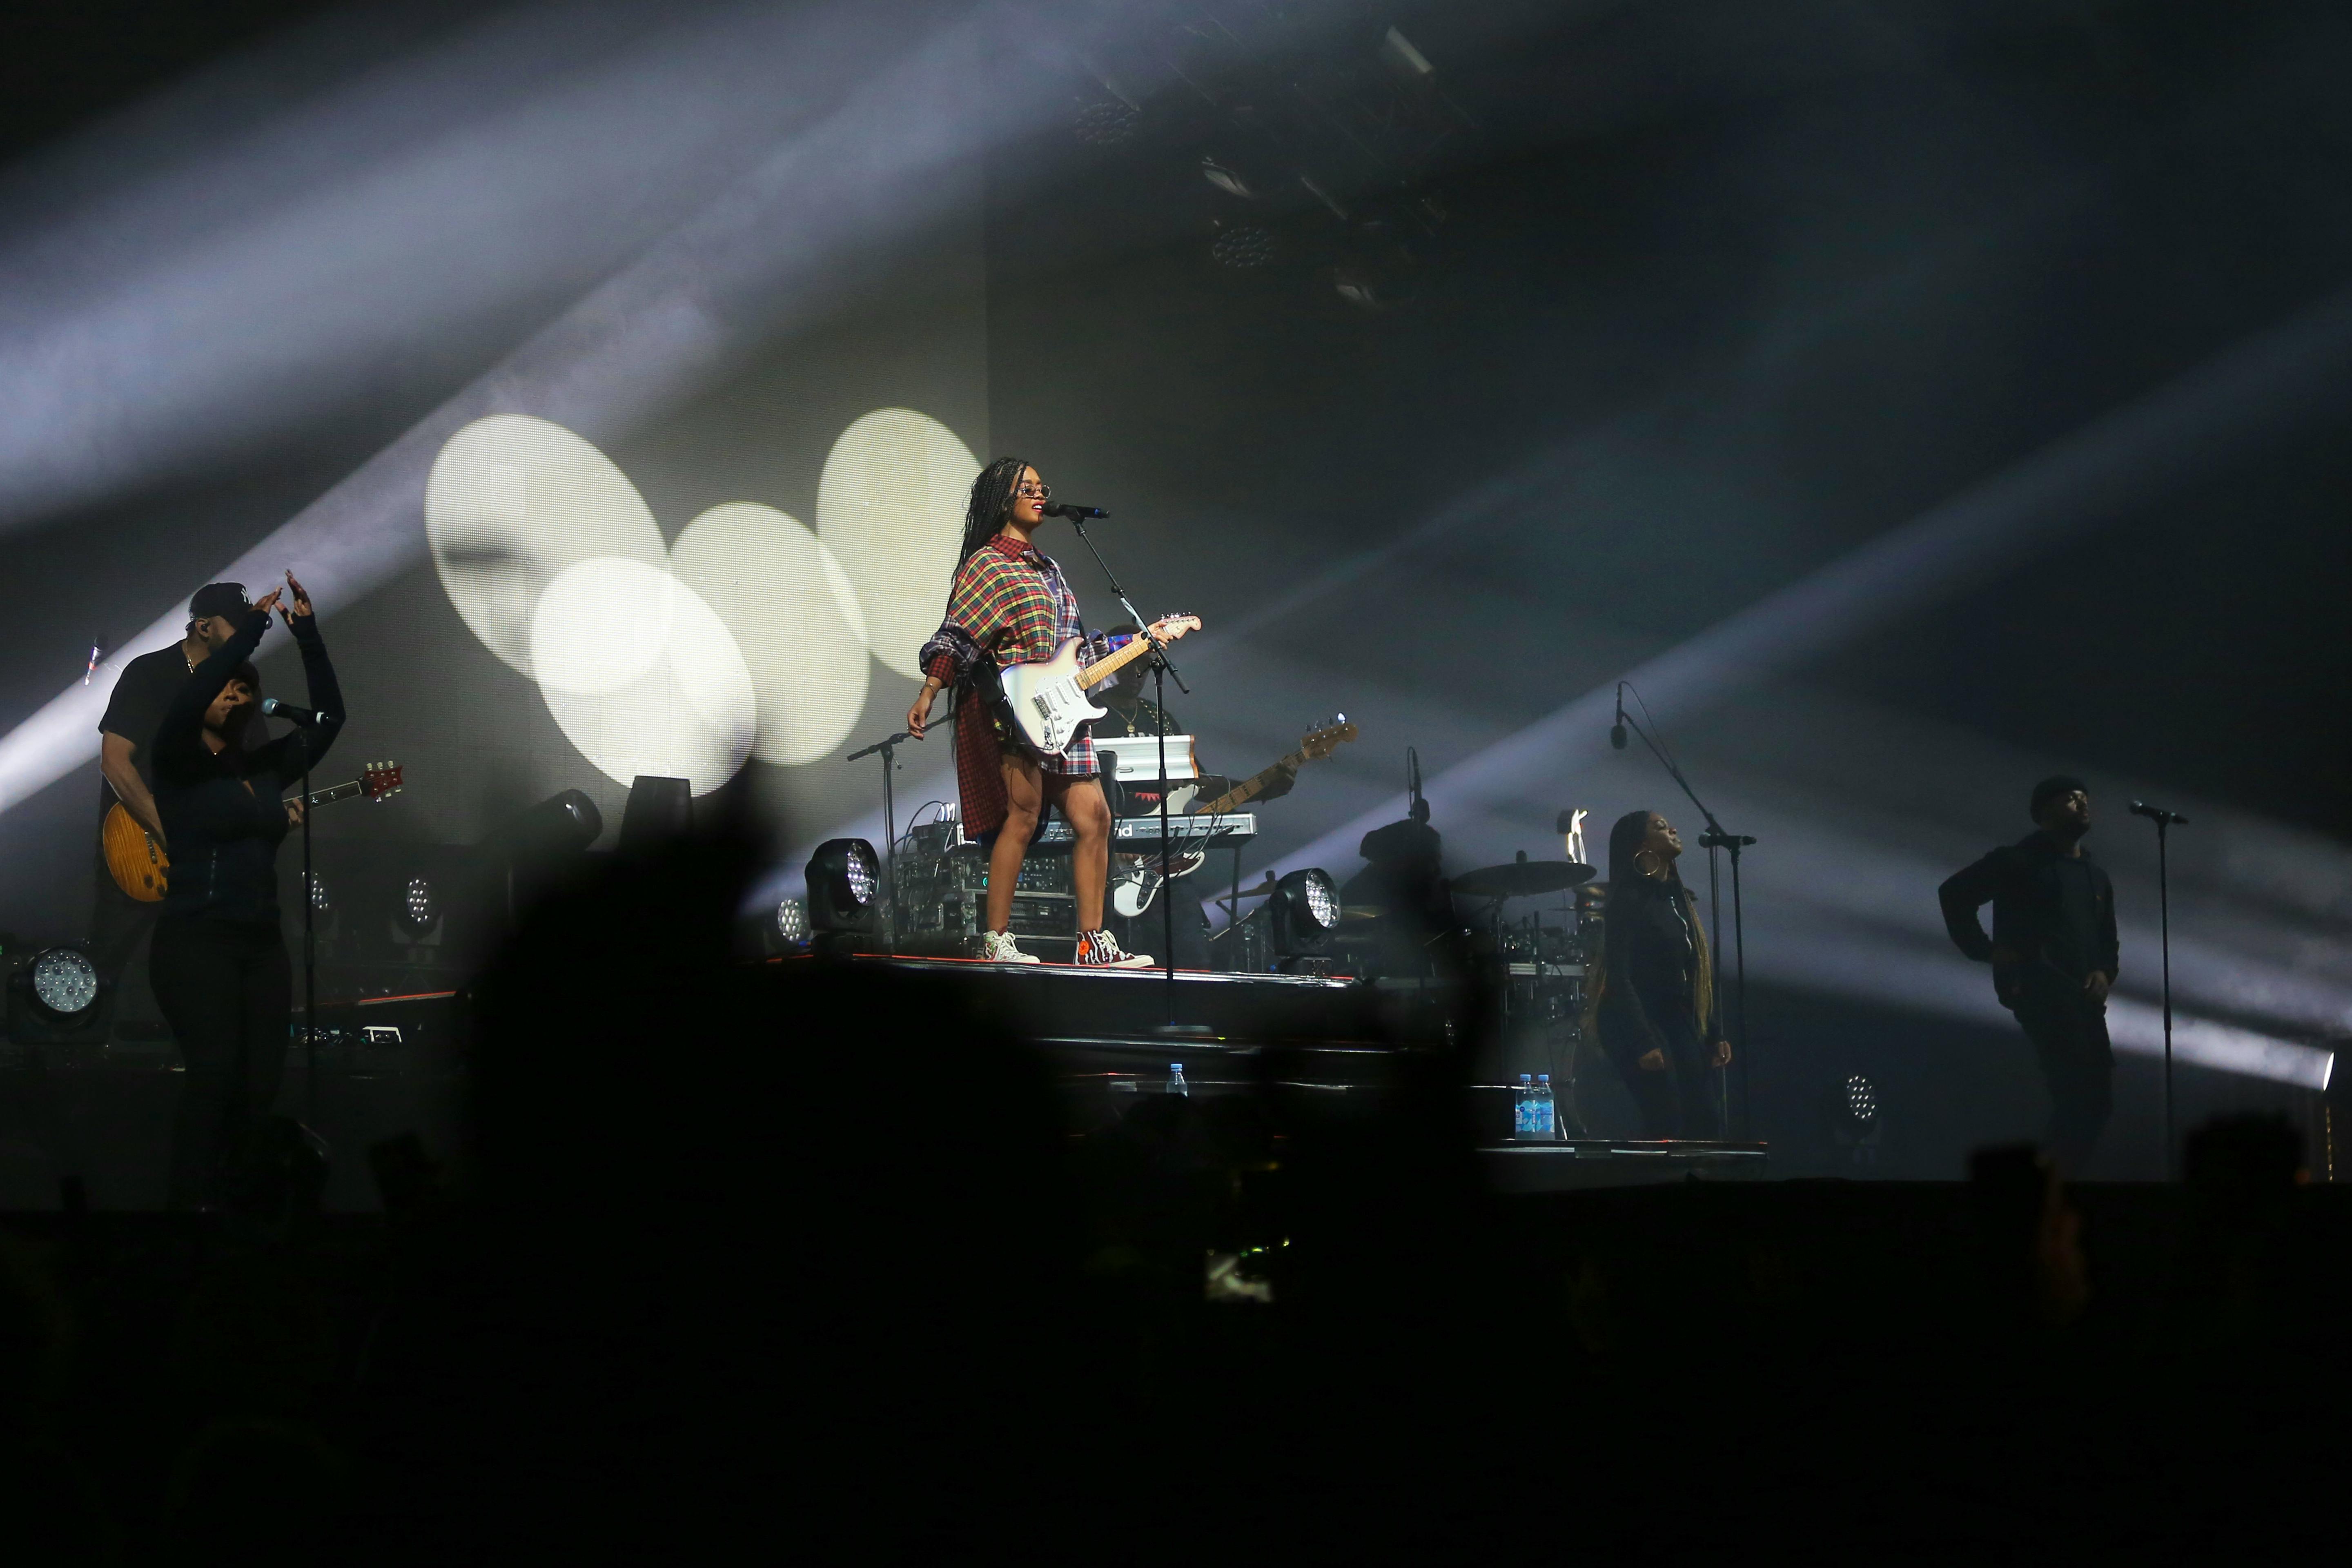 H.E.R. ancora una volta con la sua grande band dal vivo. Attualmente la si può vedere anche in apertura per i Coldplay.  - Björn Buddenbohm